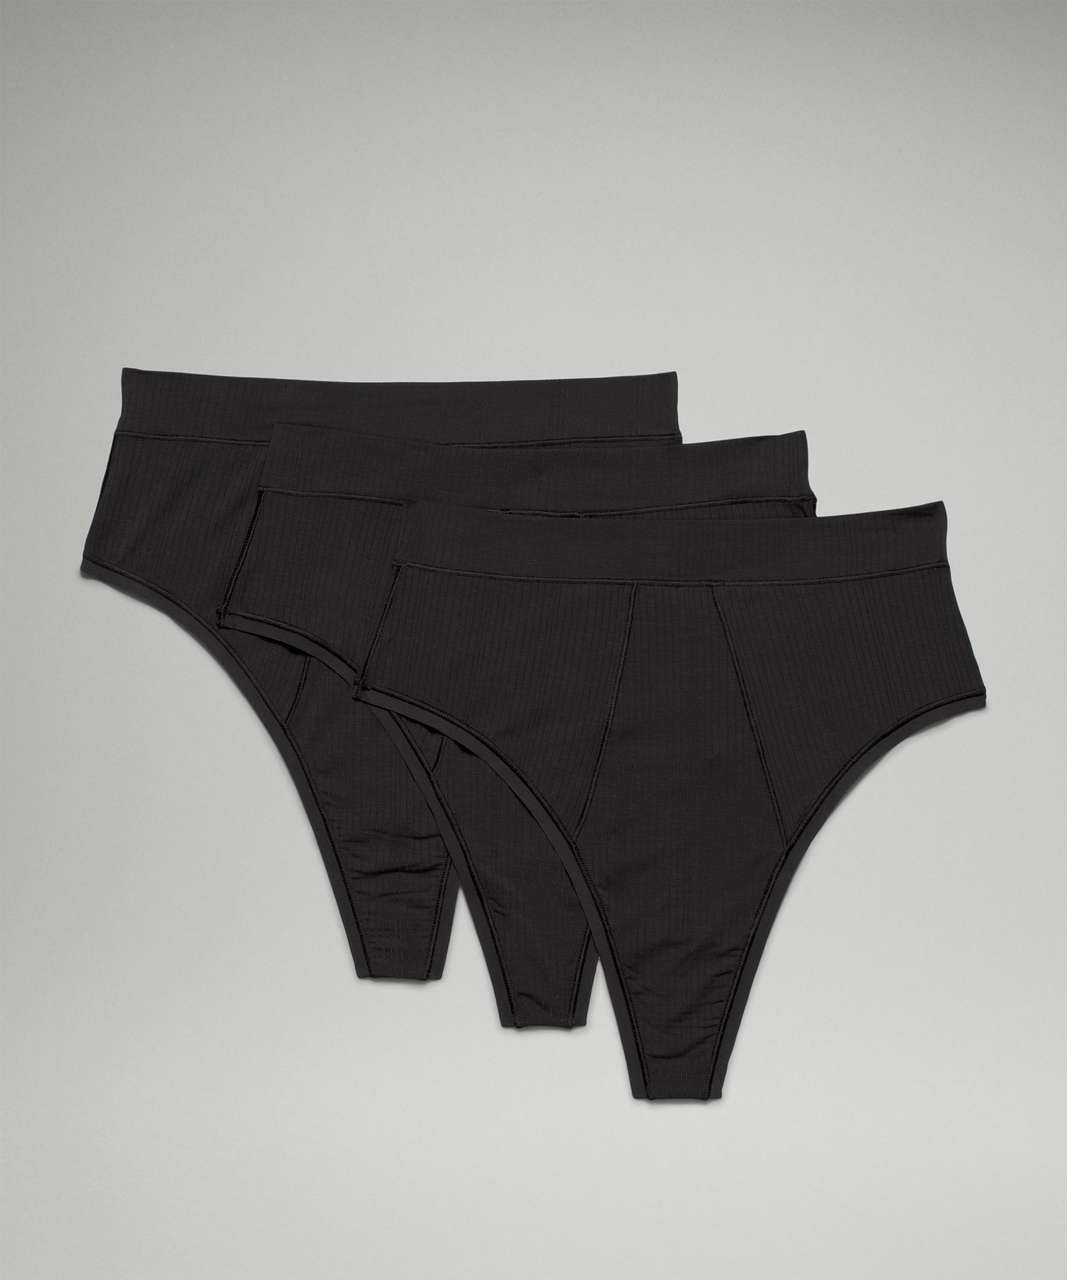 Lululemon UnderEase Ribbed High-Waist Thong Underwear 3 Pack - Black / RIB / Black / RIB / Black / RIB